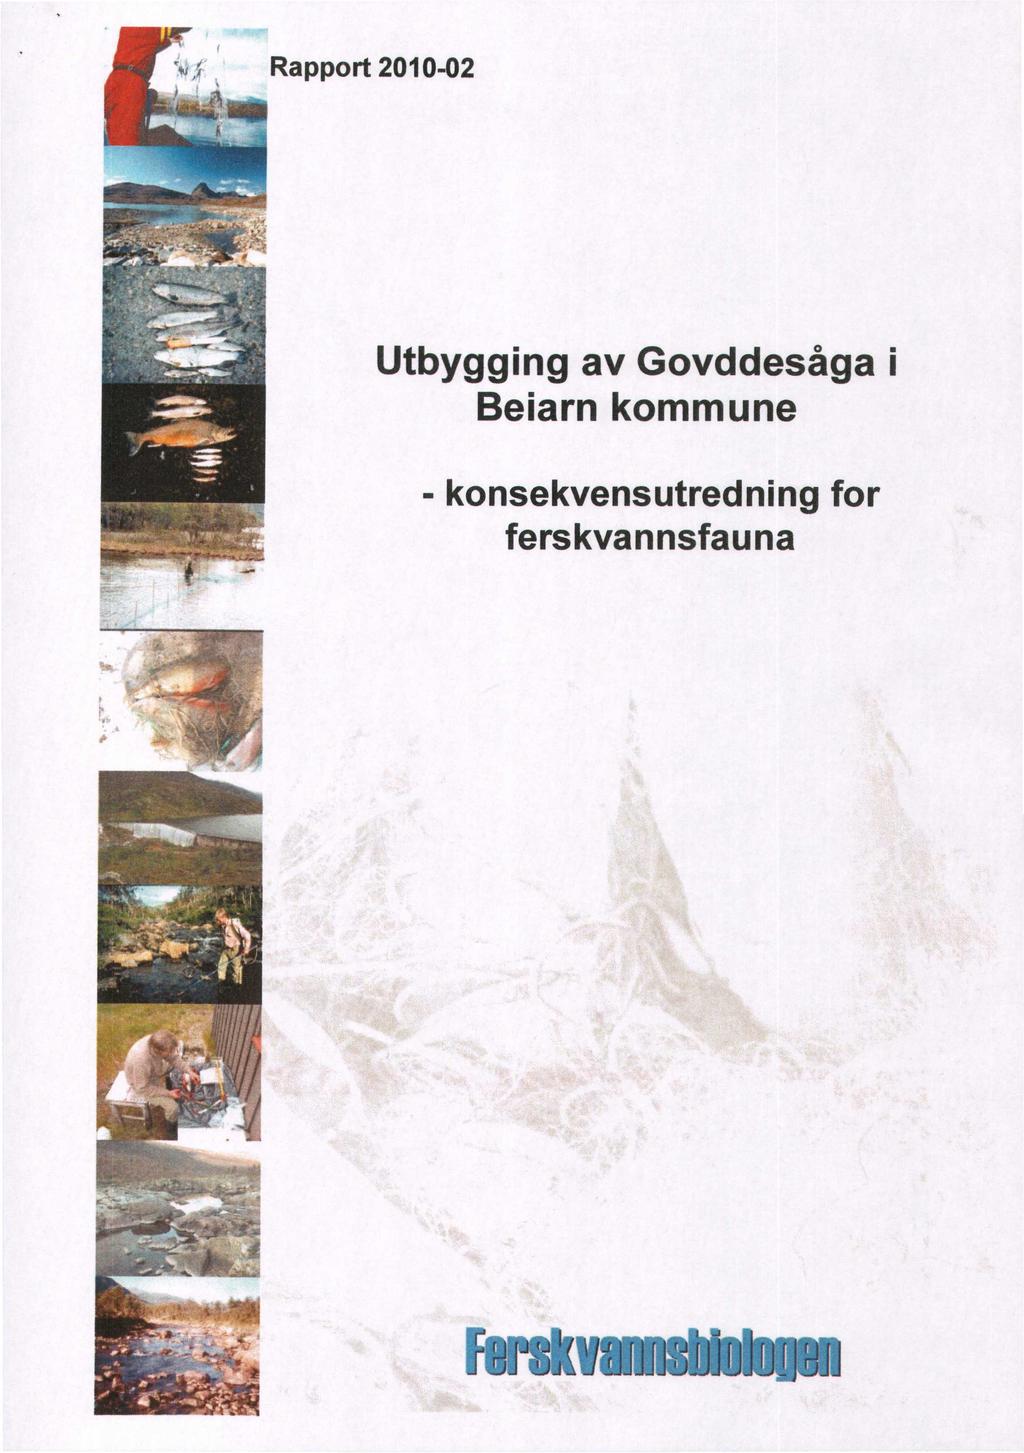 Rapport 2010-02 Utbygging av Govddesåga i Beiarn